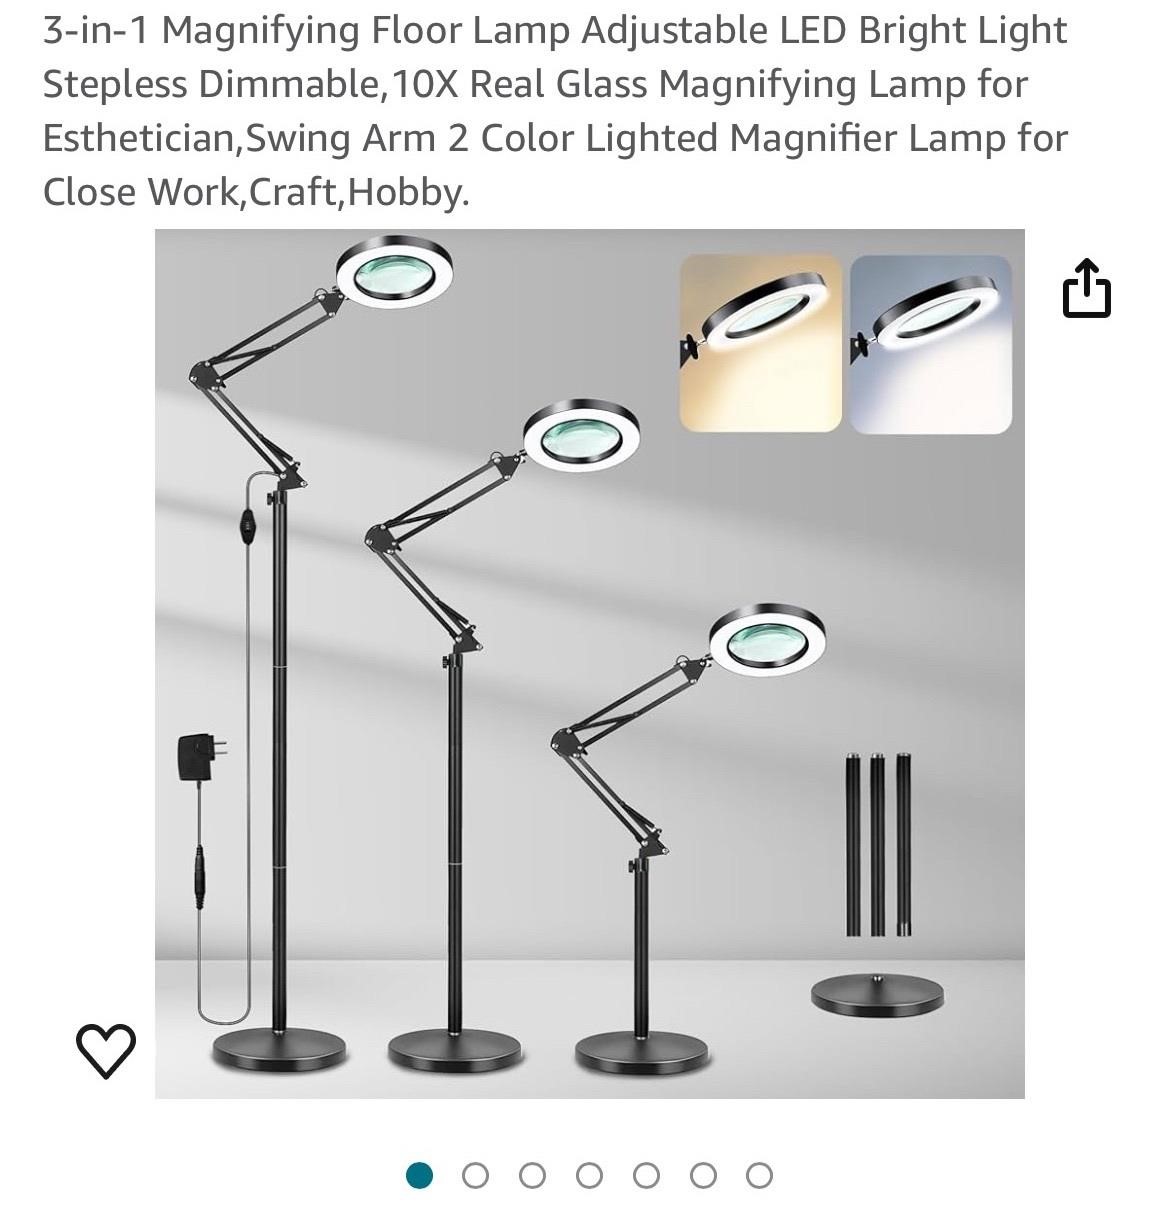 3-in-1 Magnifying Floor Lamp